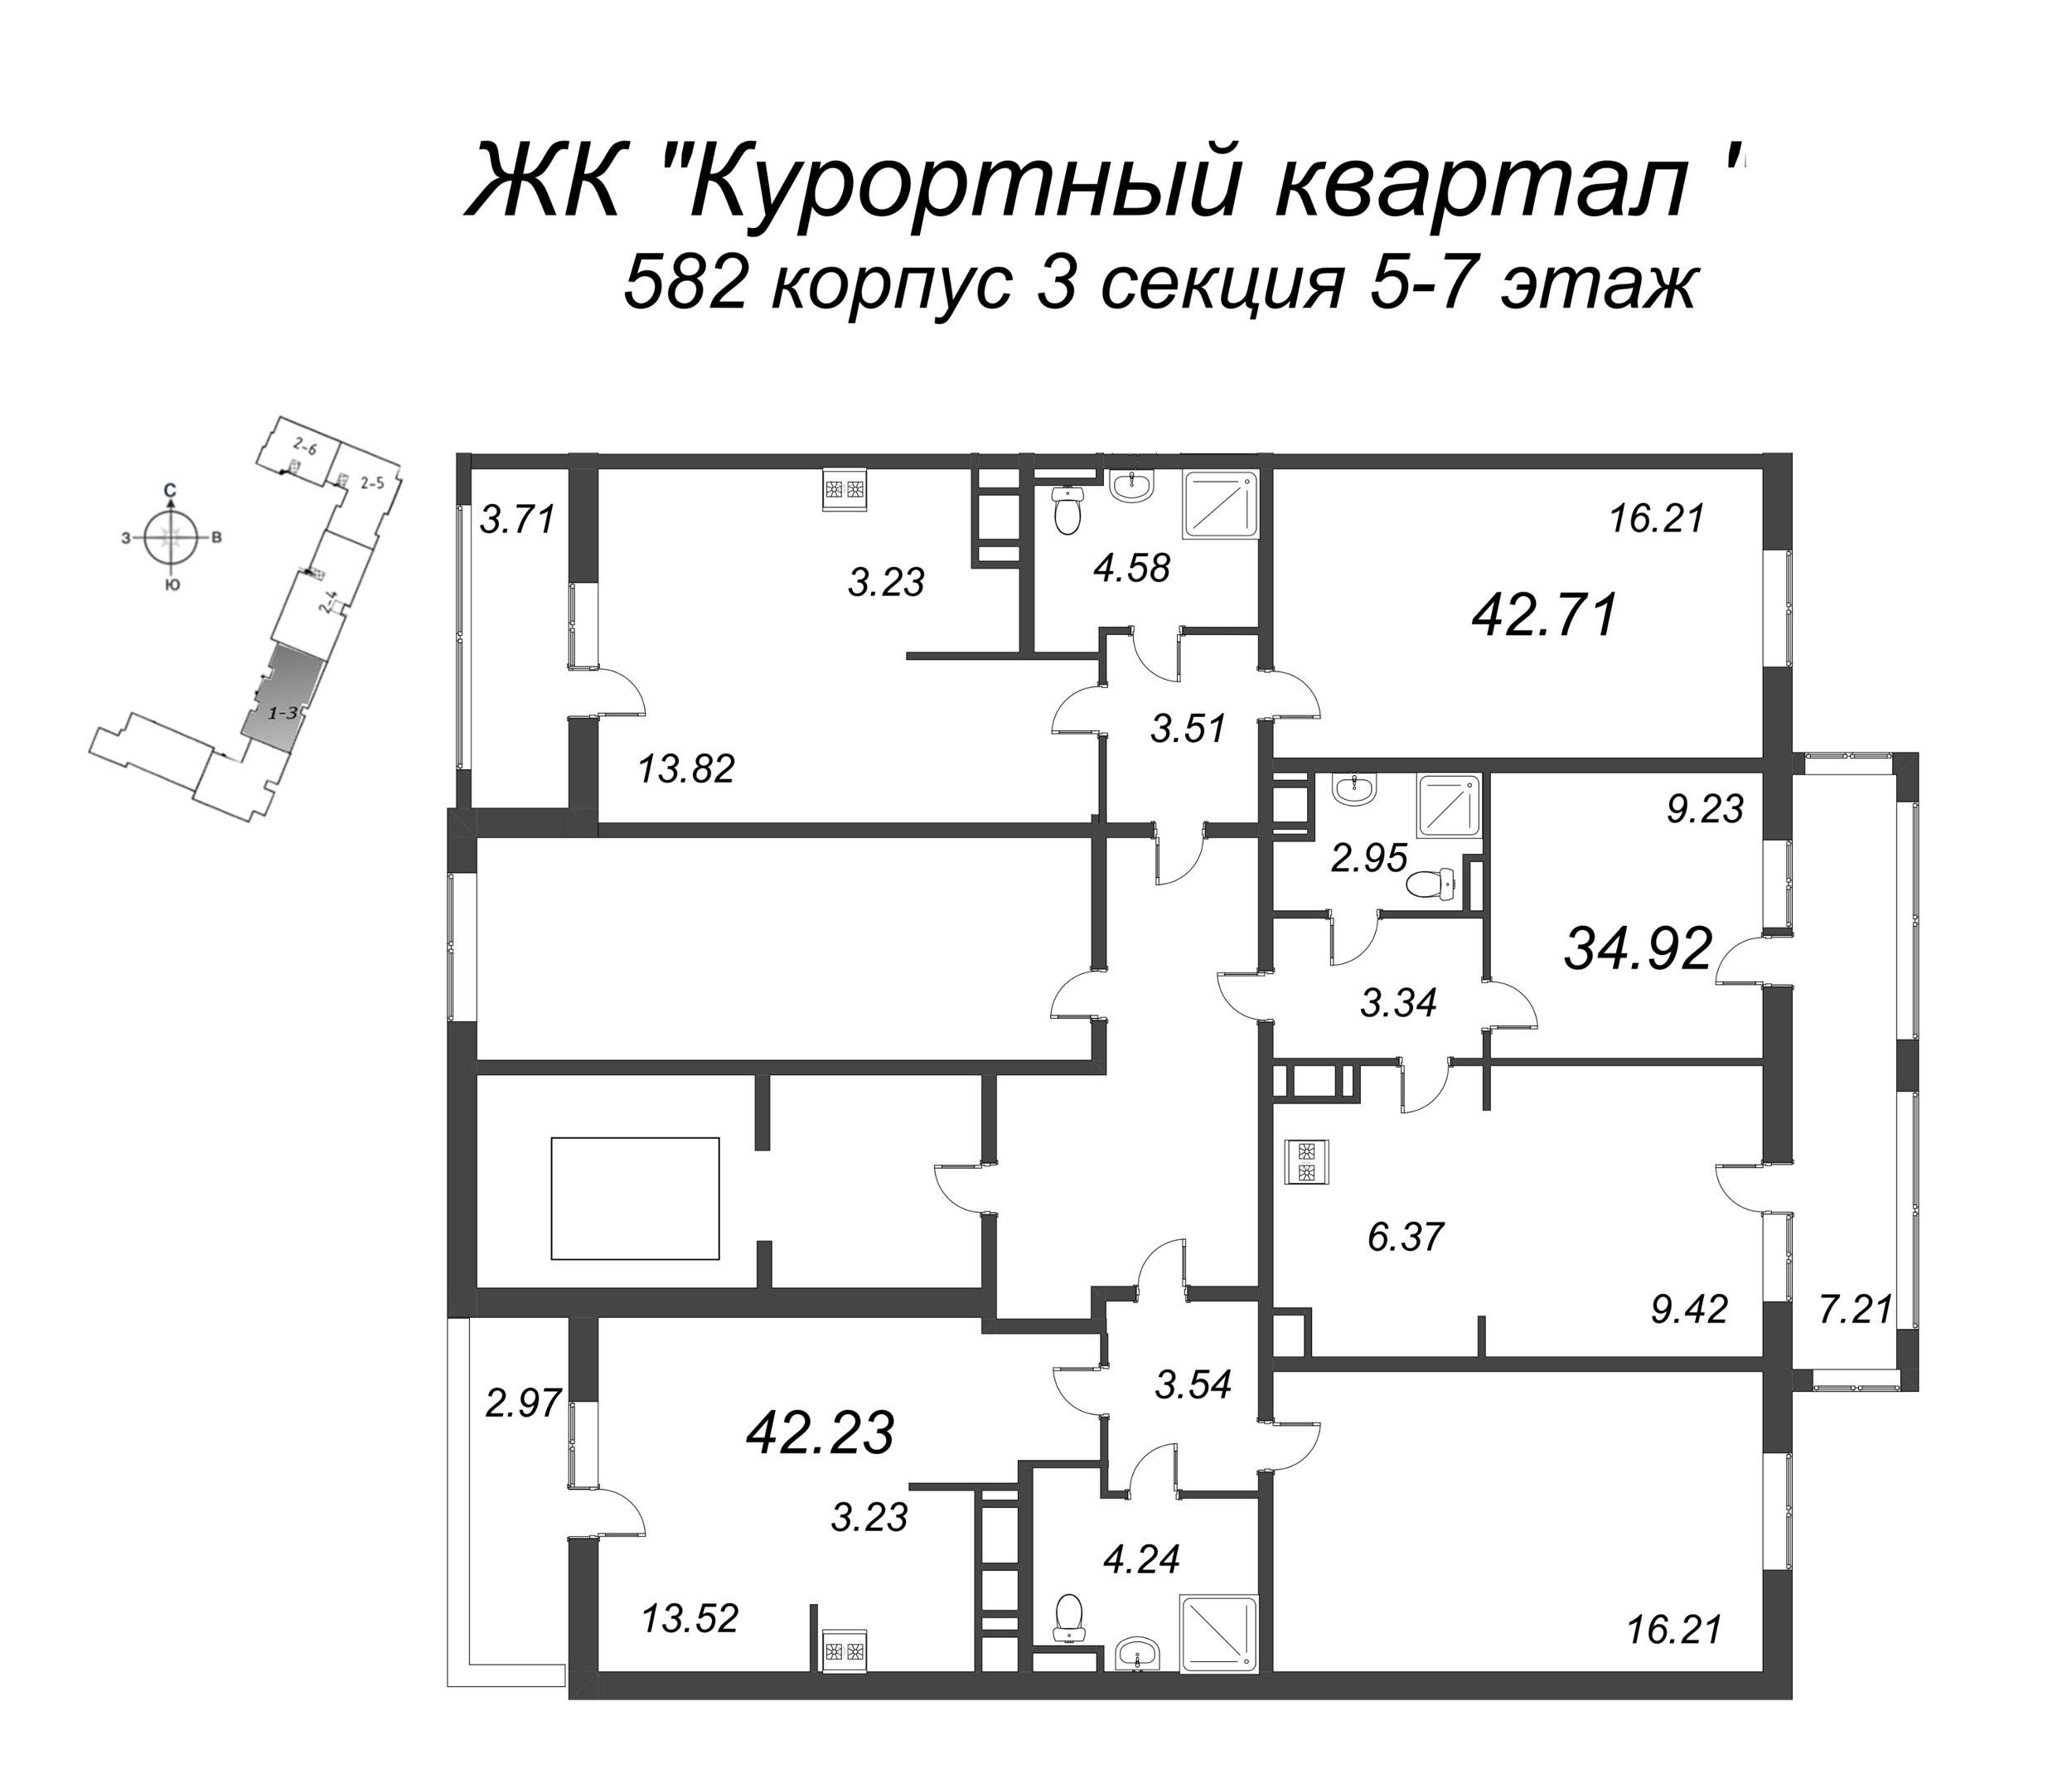 2-комнатная (Евро) квартира, 34.92 м² в ЖК "Курортный Квартал" - планировка этажа